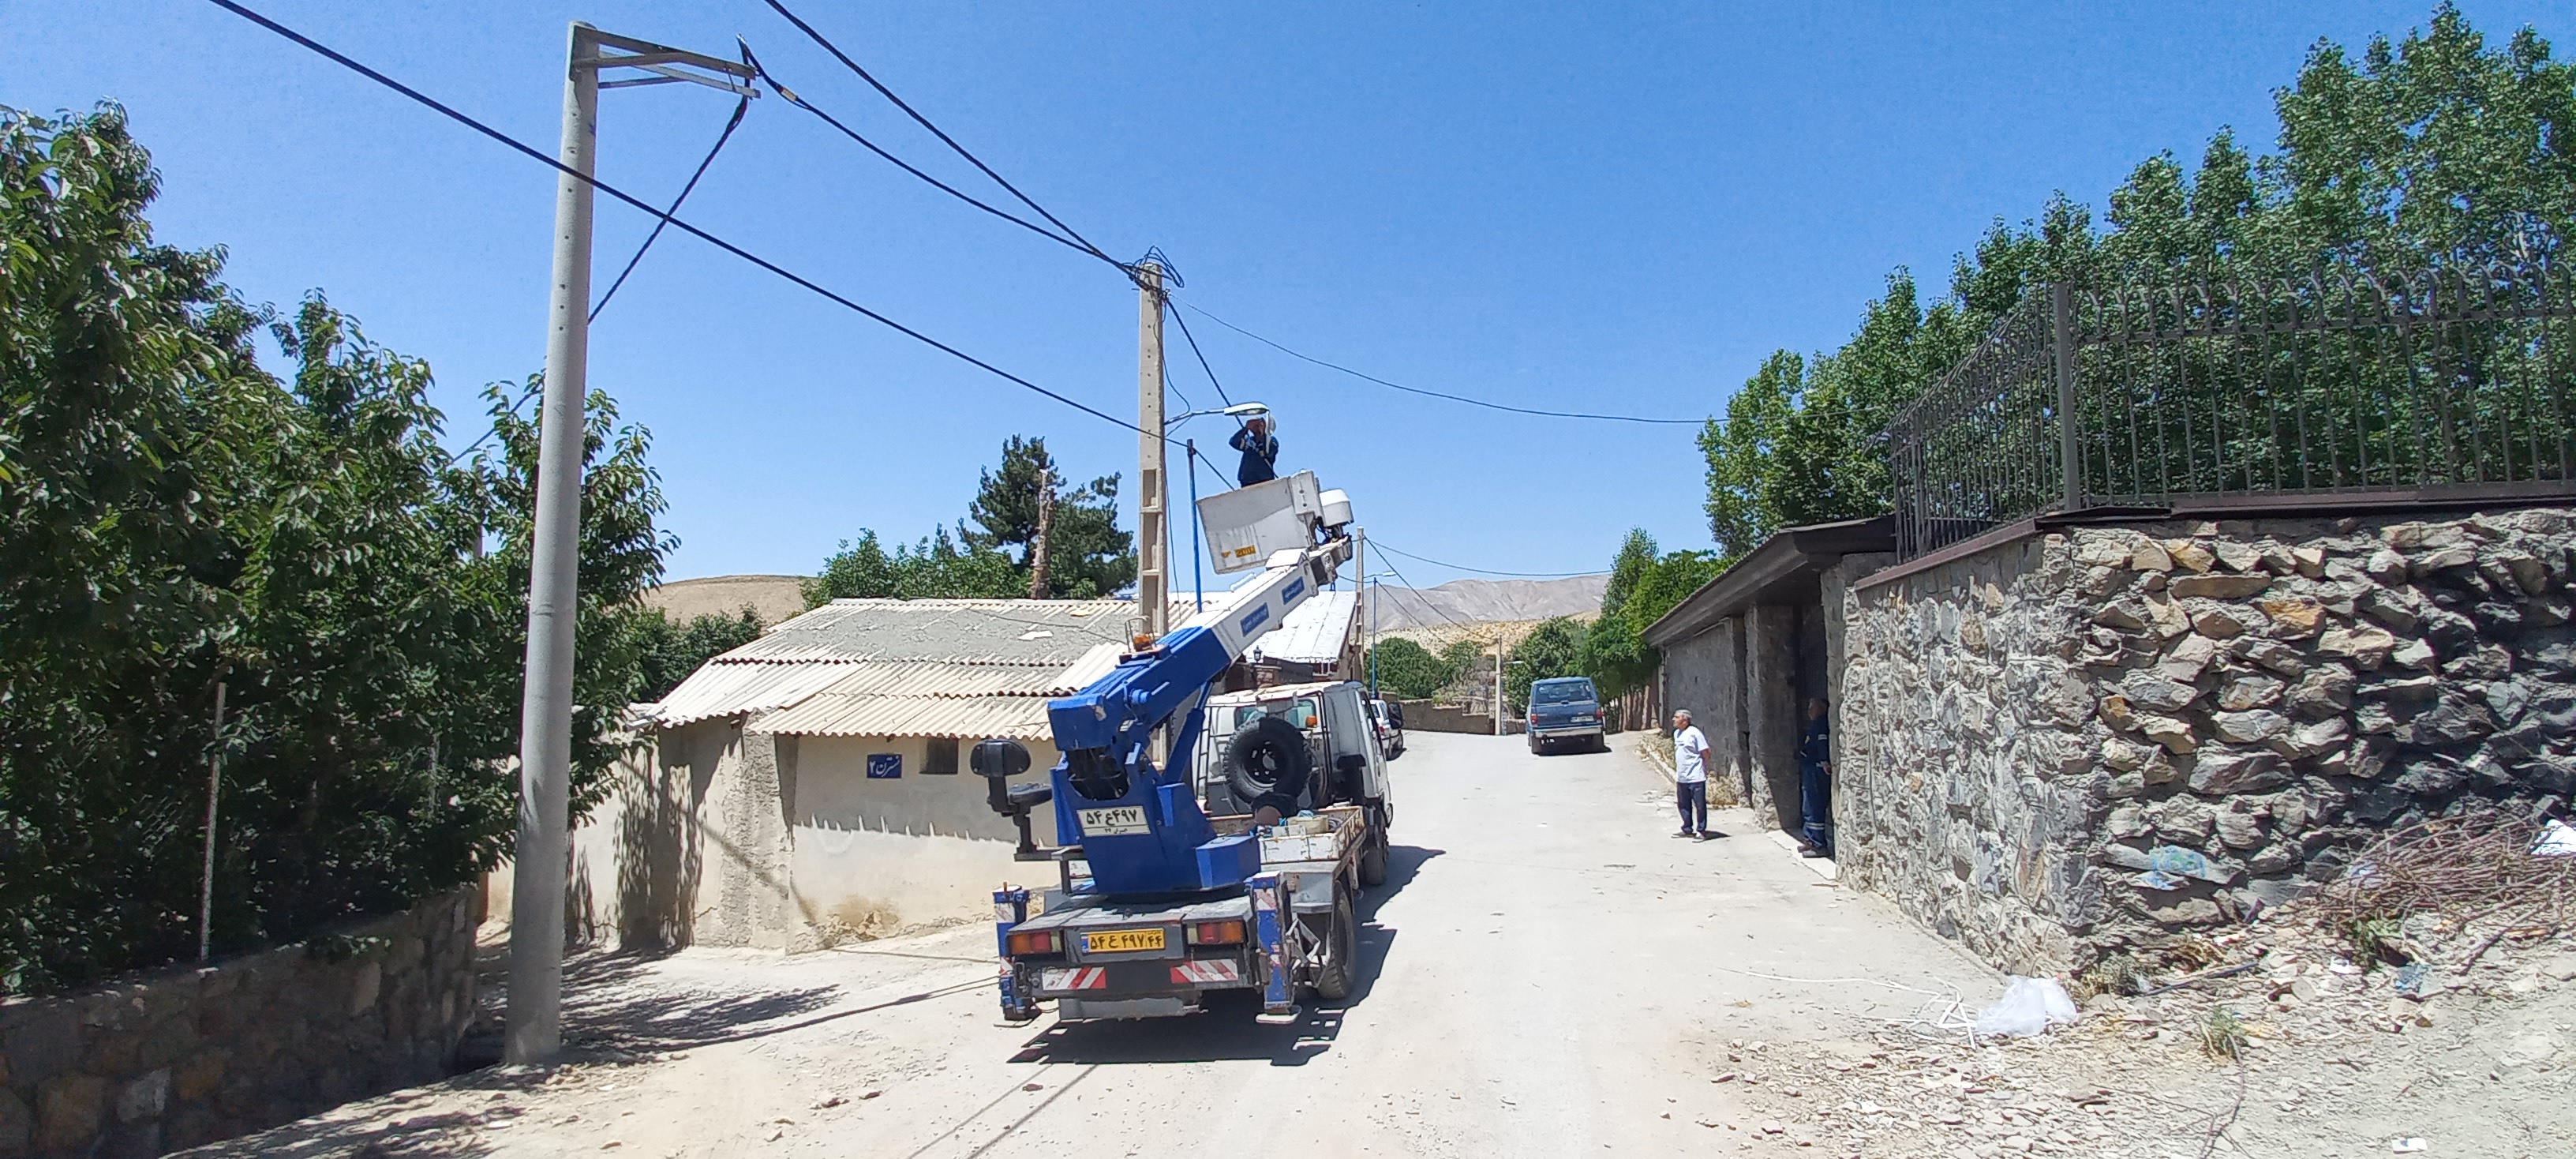 رفع مشکل روشنایی معابر در روستای انباج